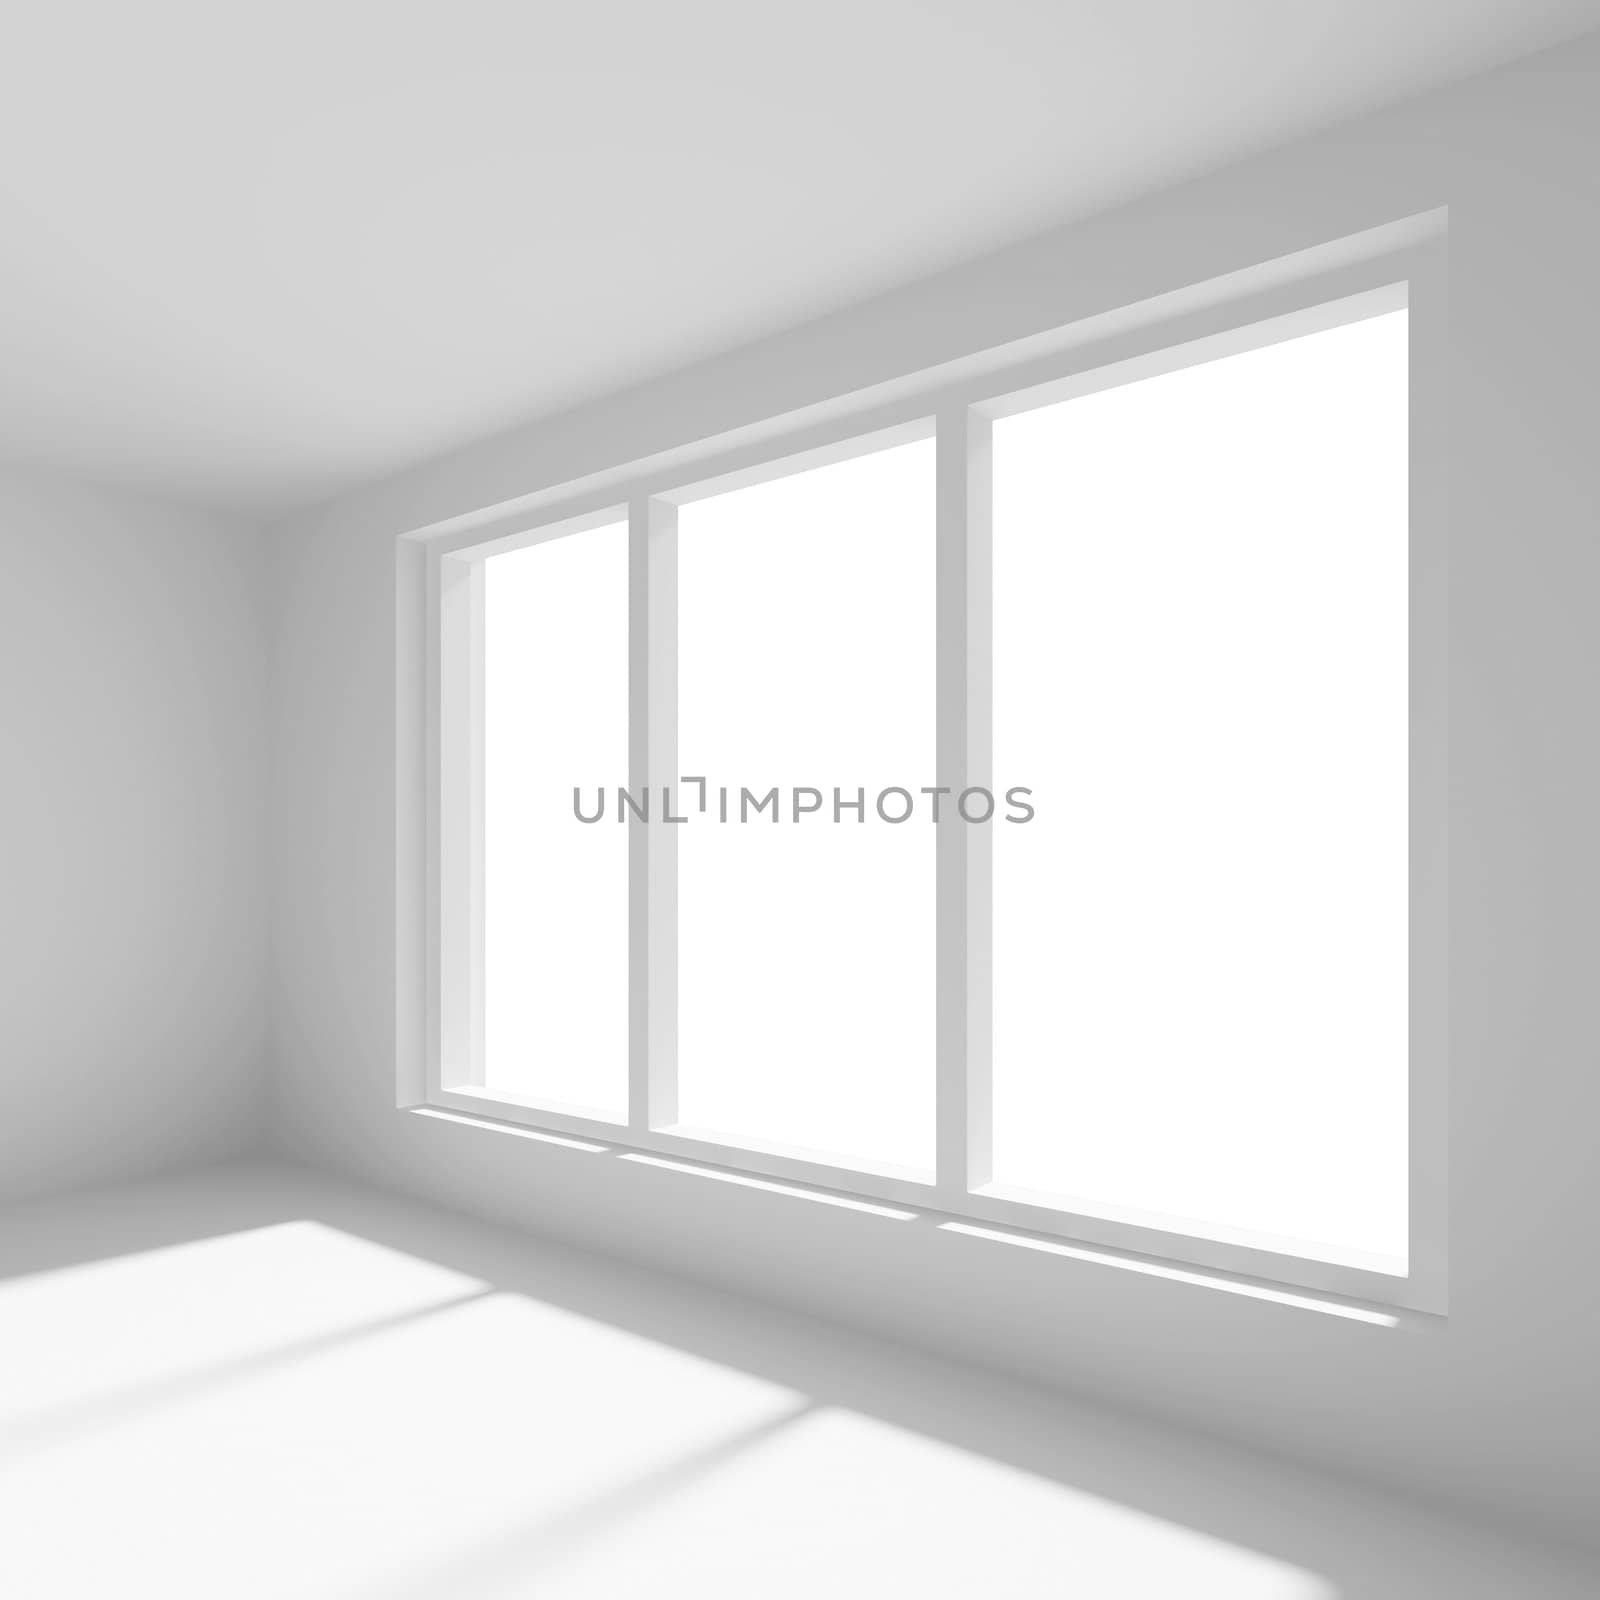 White Empty Room by maxkrasnov